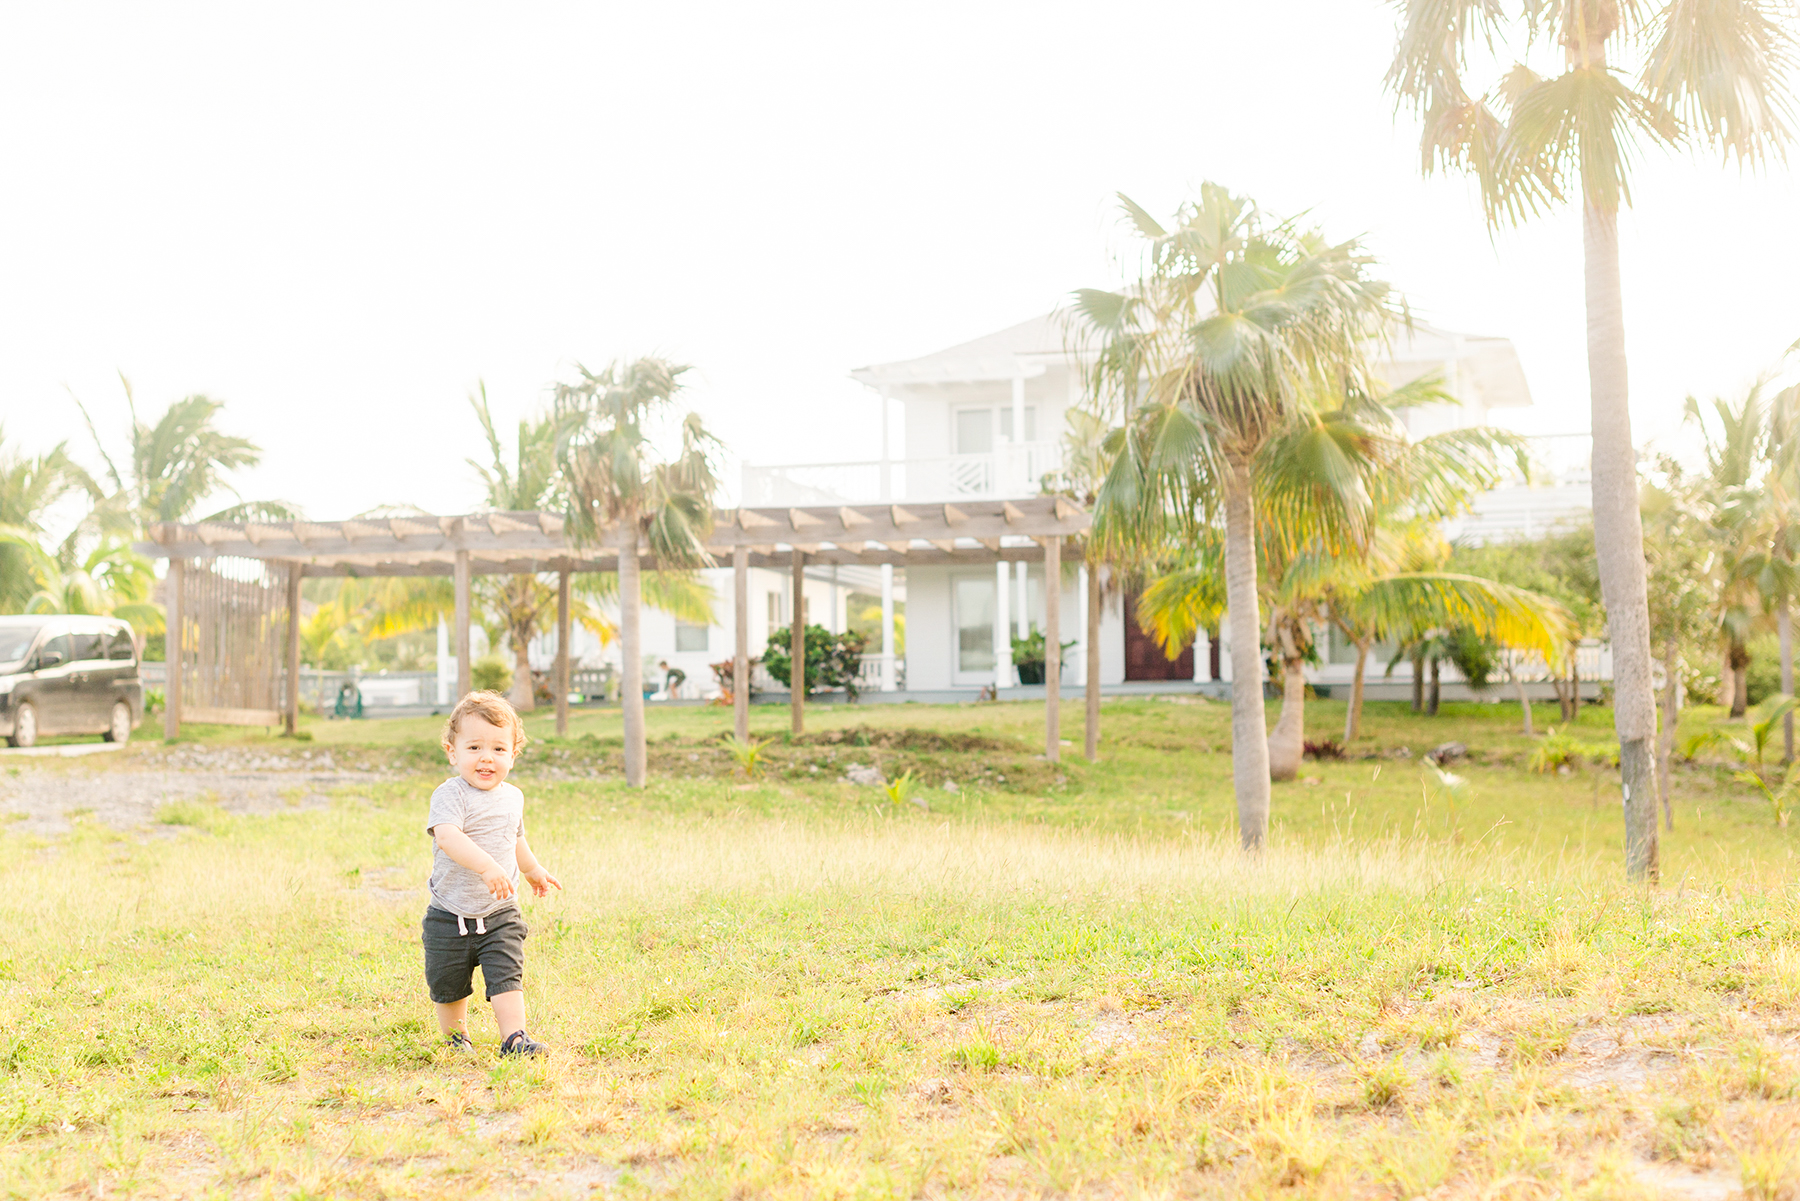 Boy-runs-in-grass-in-caribbean